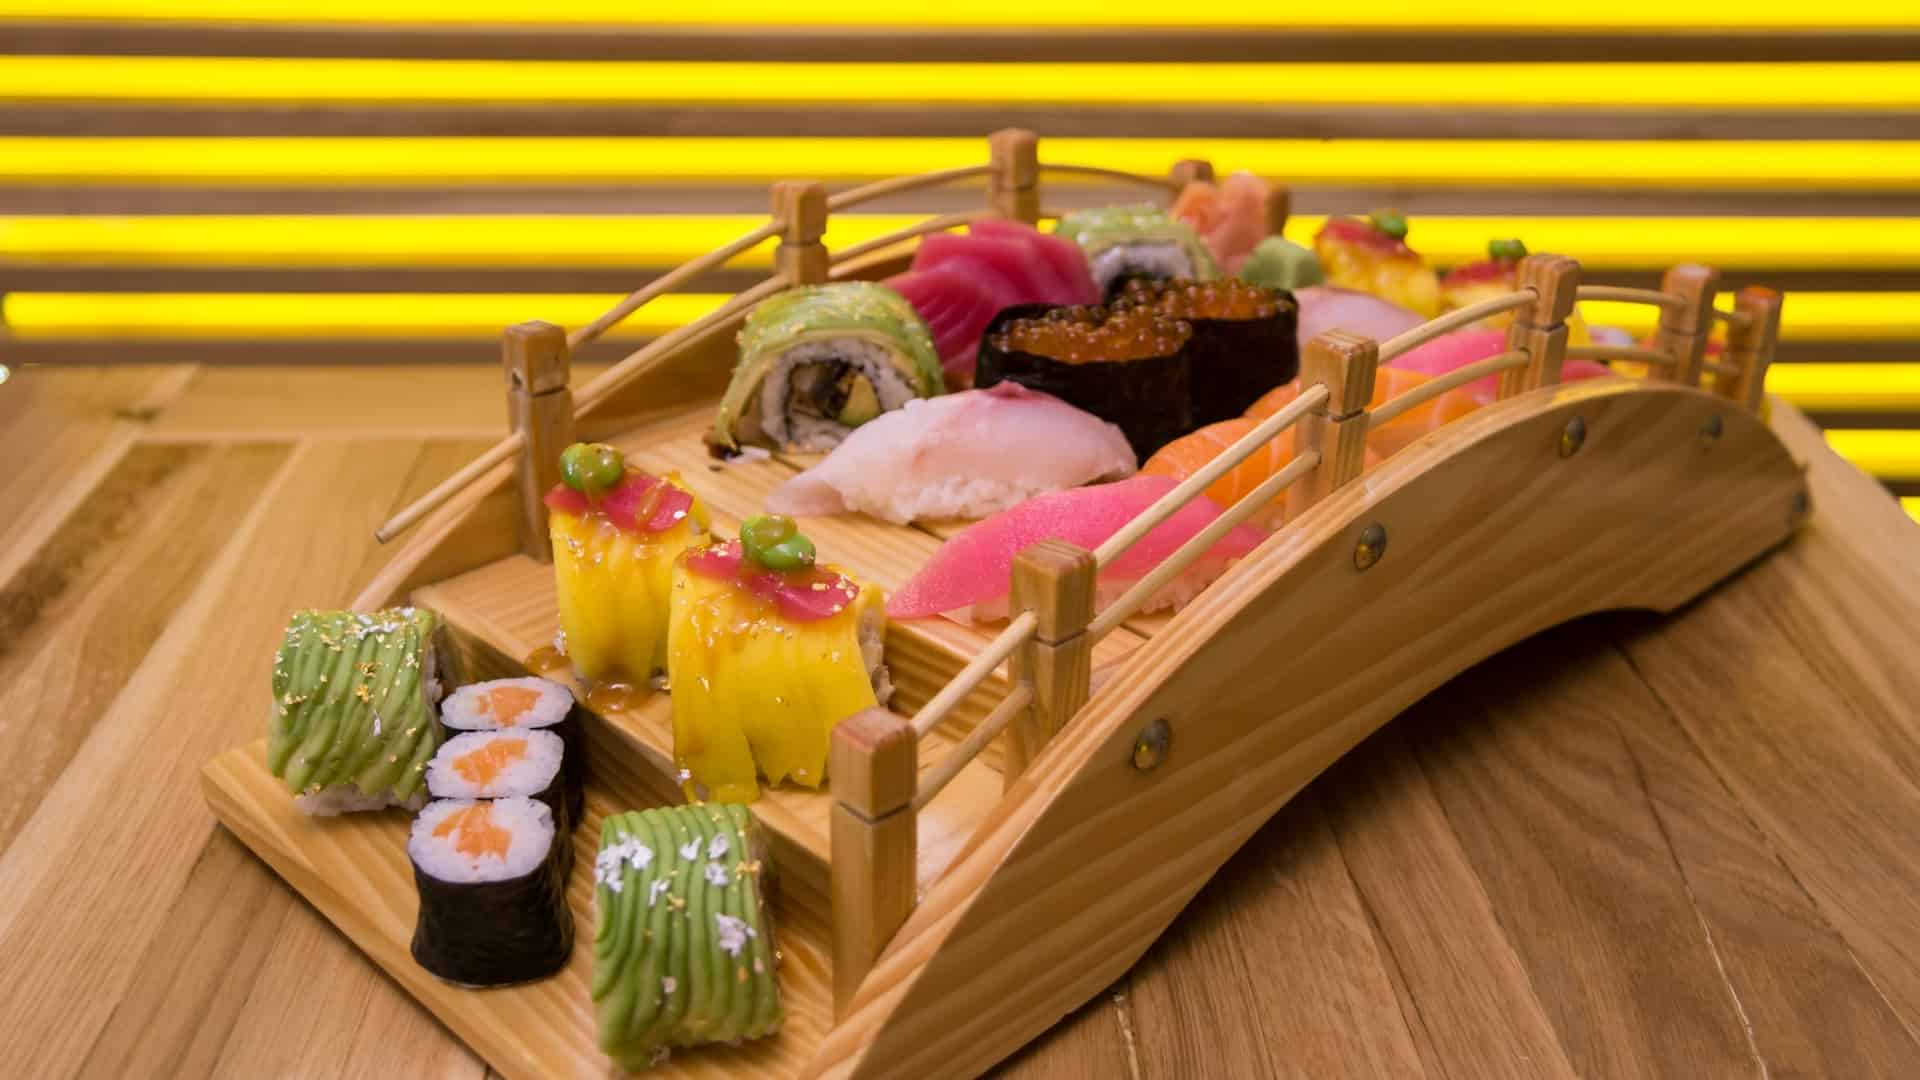 Är det sushi eller zushi